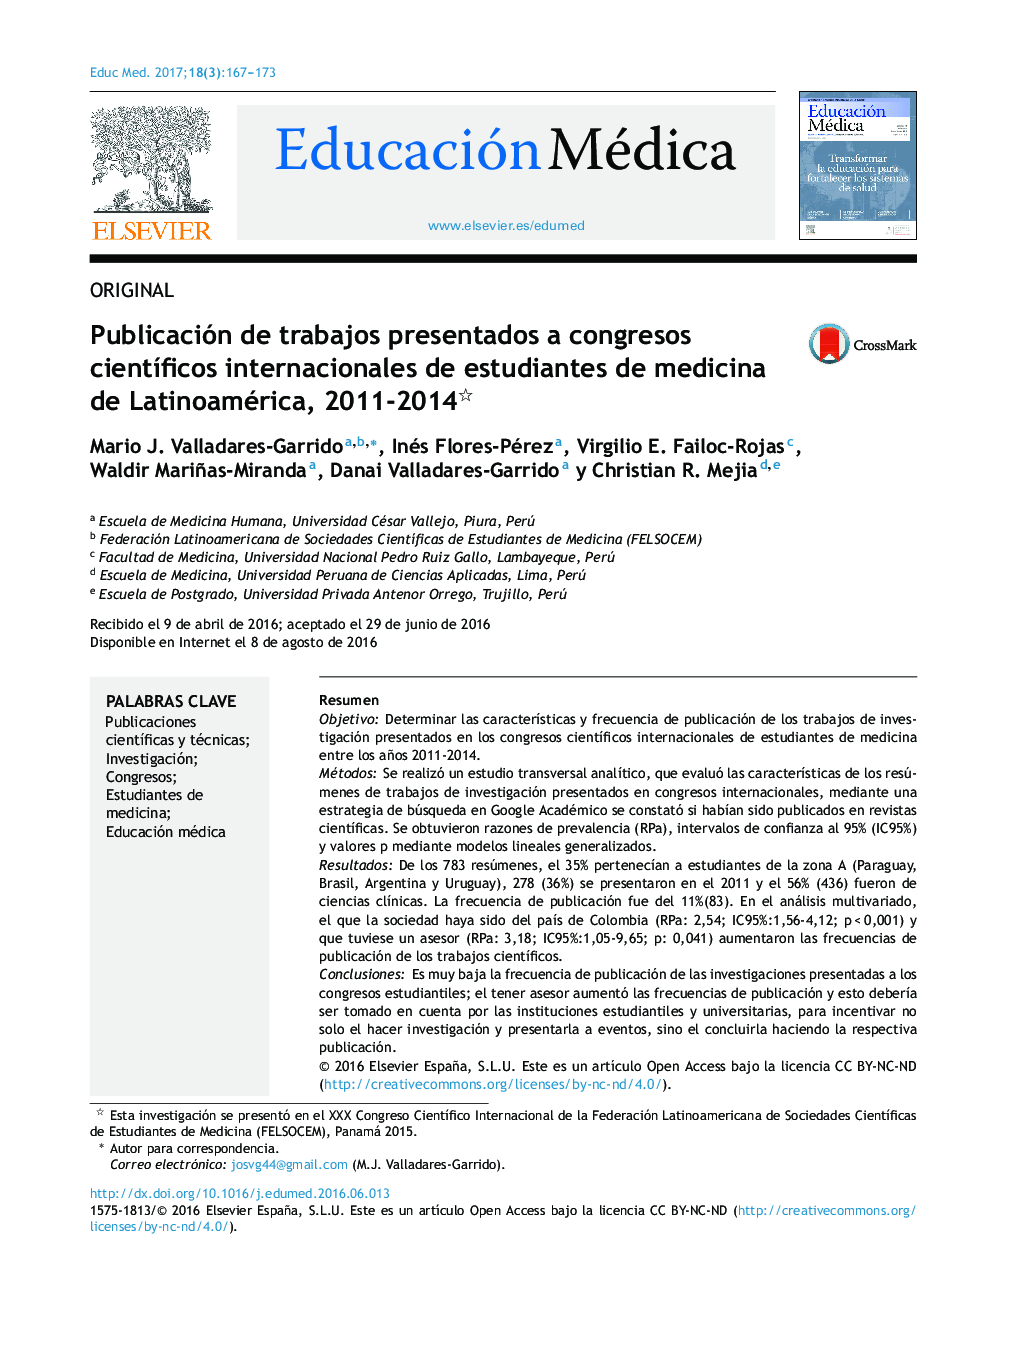 Publicación de trabajos presentados a congresos cientÃ­ficos internacionales de estudiantes de medicina de Latinoamérica, 2011-2014